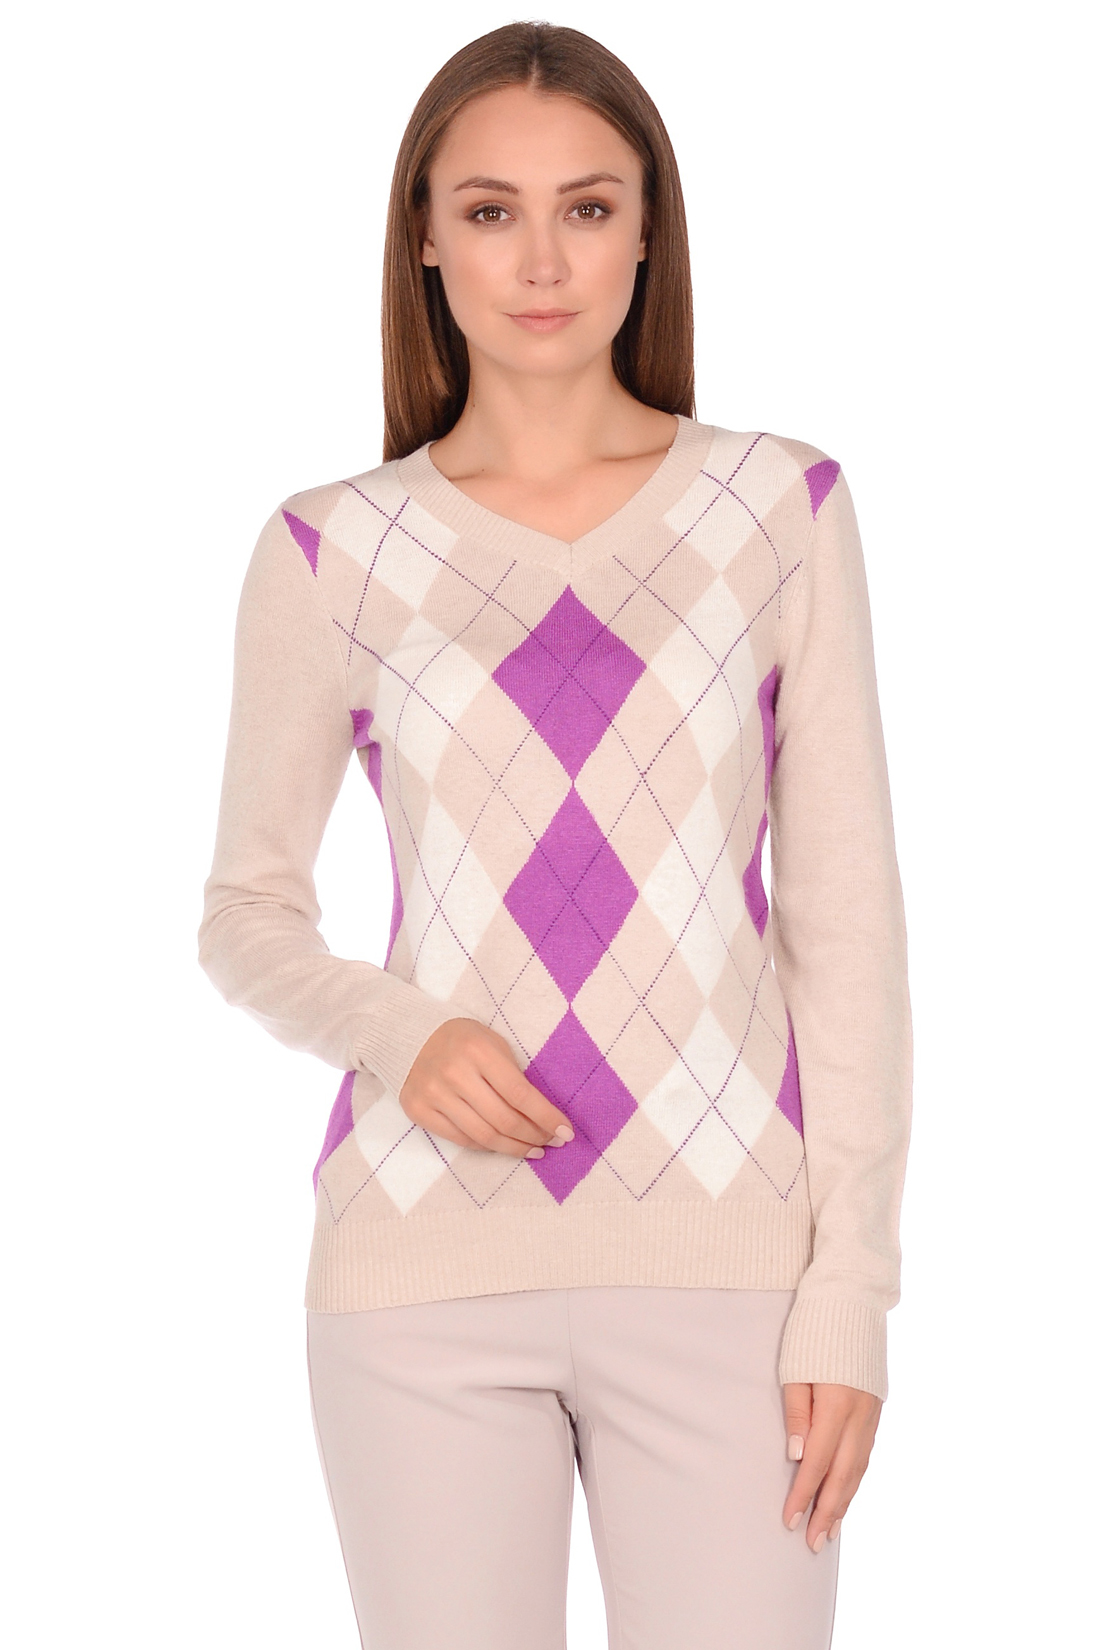 Базовый пуловер с ромбами и ангорой (арт. baon B138702), размер M, цвет серый Базовый пуловер с ромбами и ангорой (арт. baon B138702) - фото 1